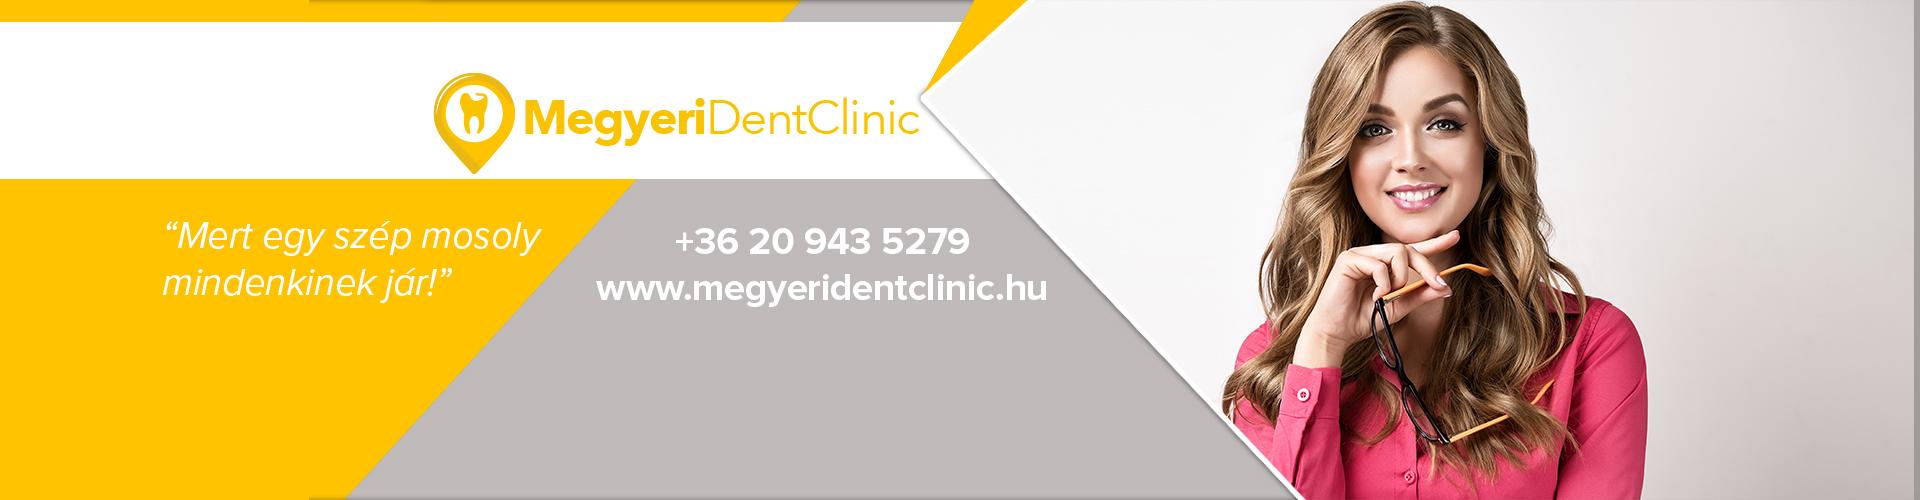 Megyeri Dent Clinic